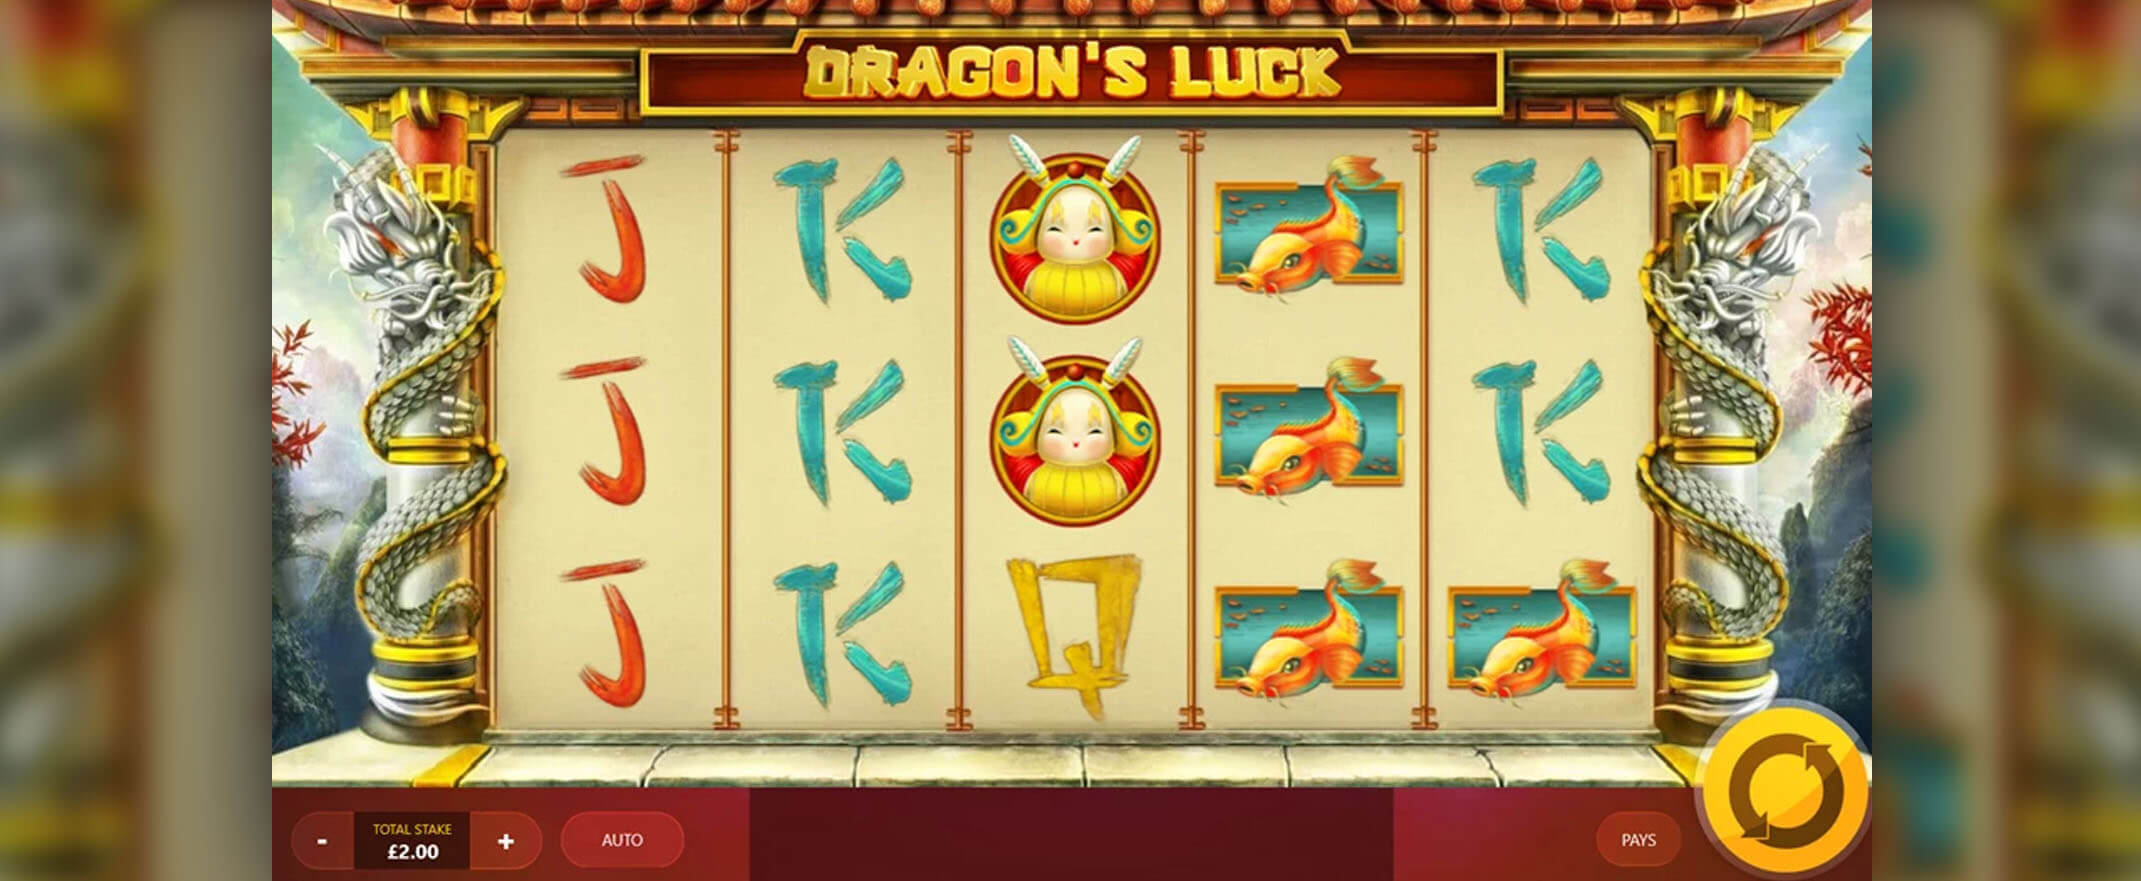 Dragons Luck Spielautomat spielen